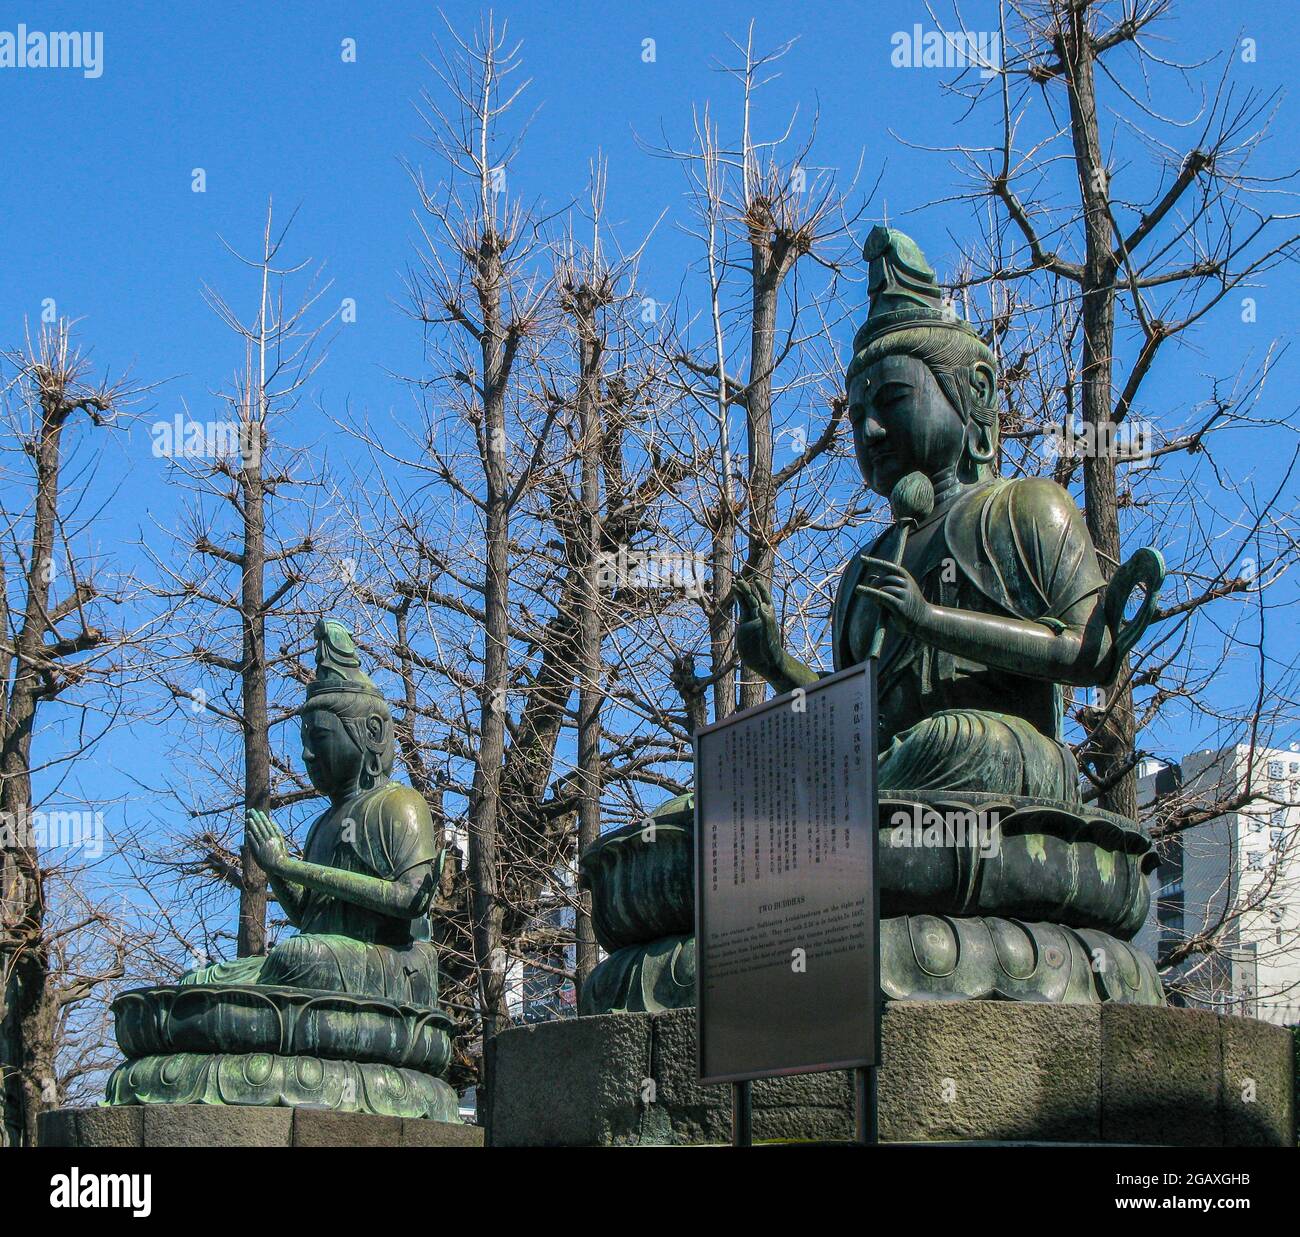 The Two Bronze Buddhas, Asakusa Kannon Temple, Tokyo Stock Photo